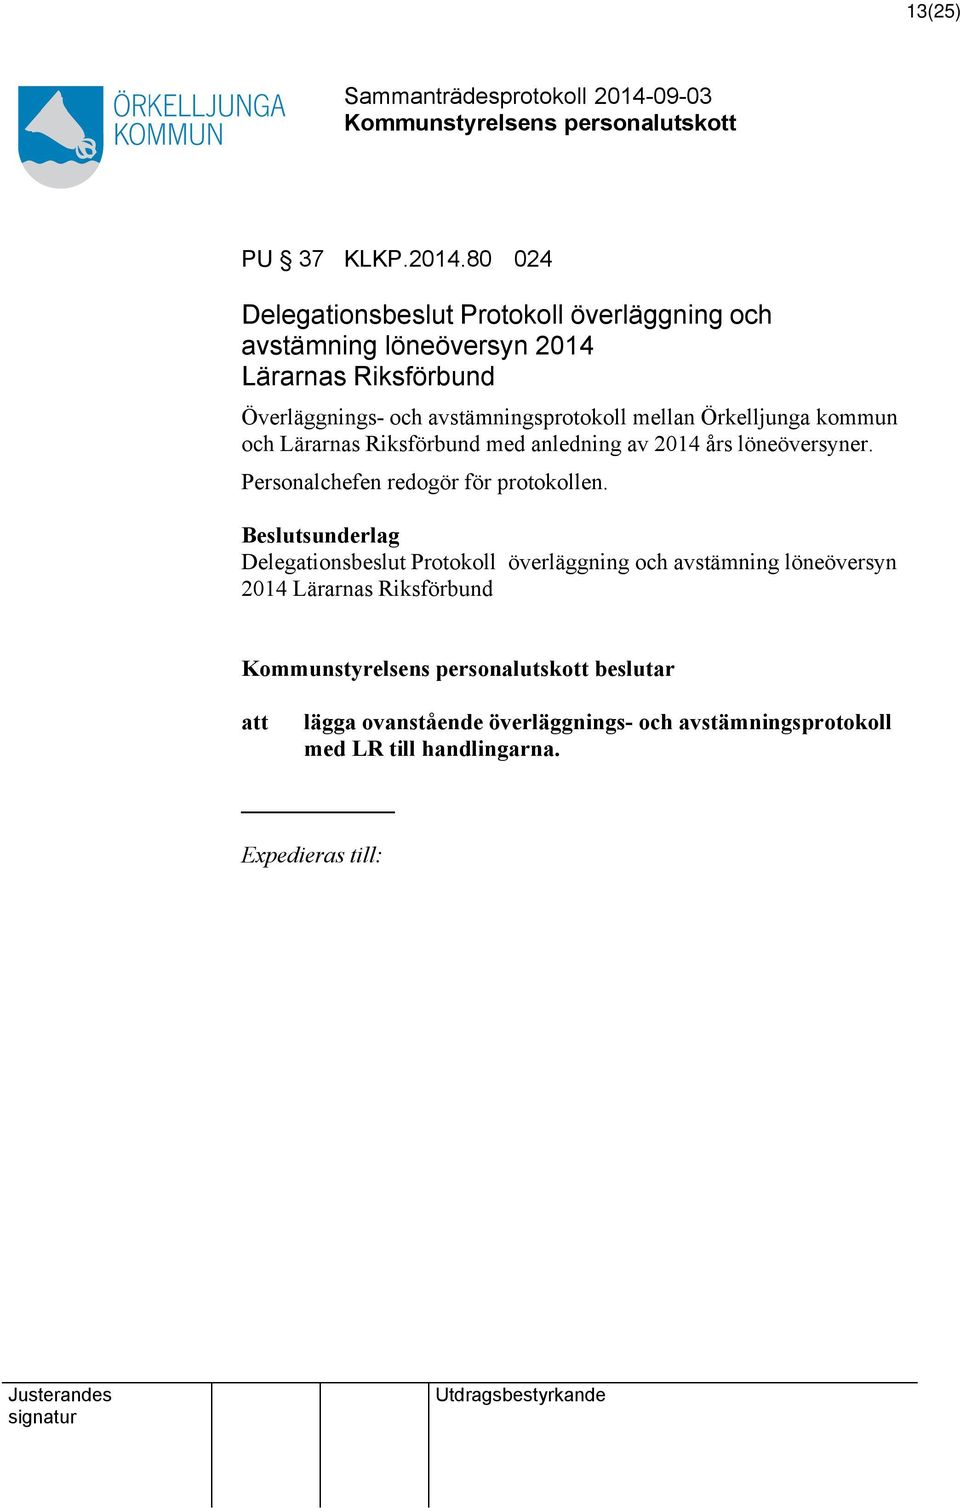 avstämningsprotokoll mellan Örkelljunga kommun och Lärarnas Riksförbund med anledning av 2014 års löneöversyner.